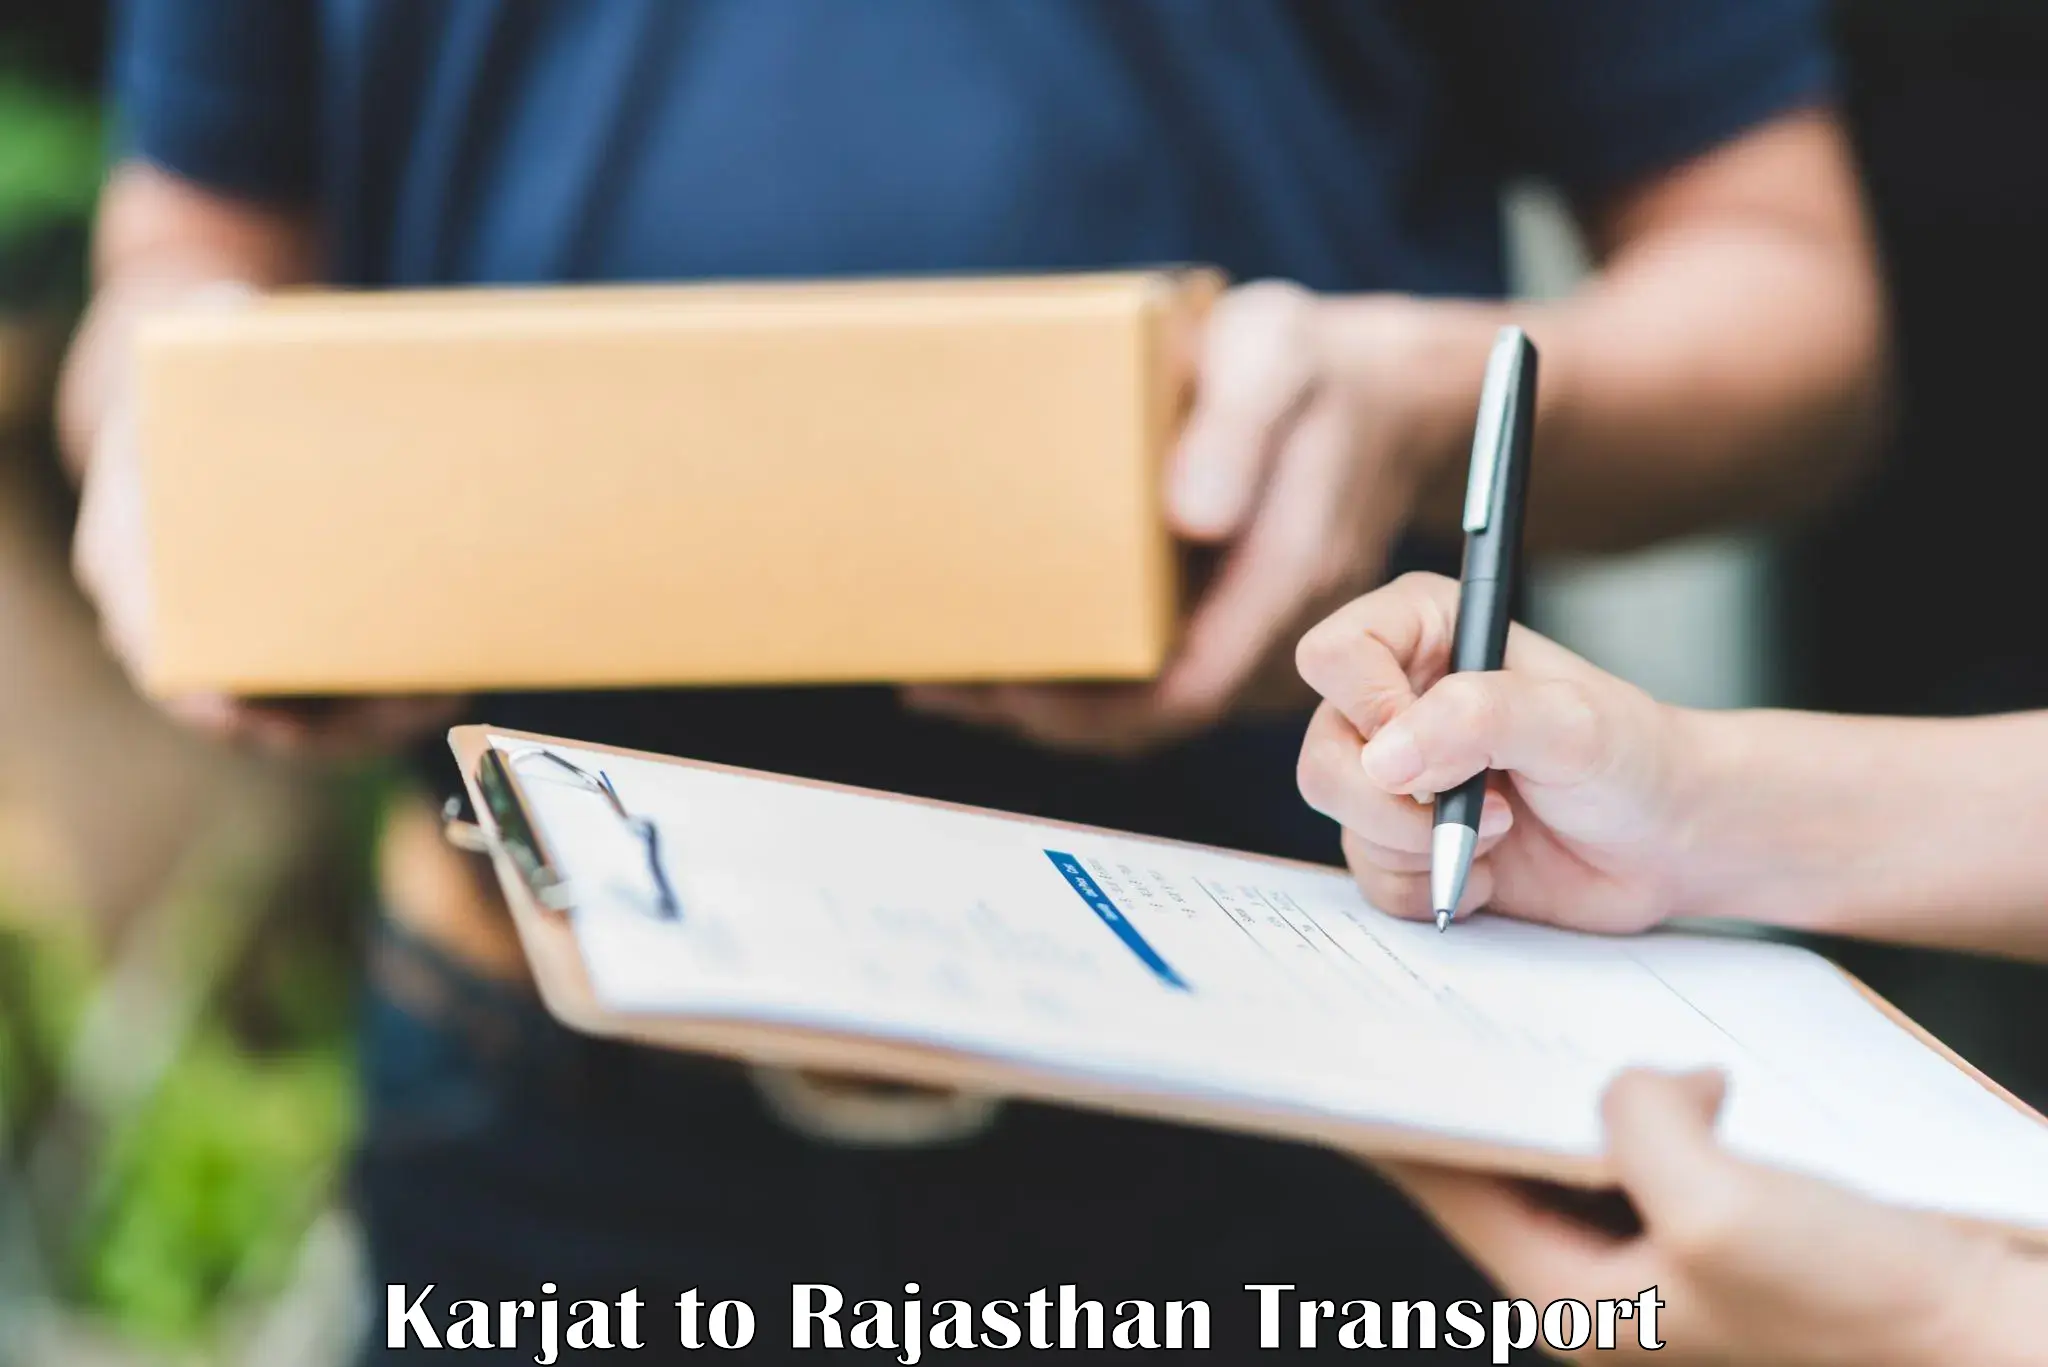 Cycle transportation service Karjat to Kaman